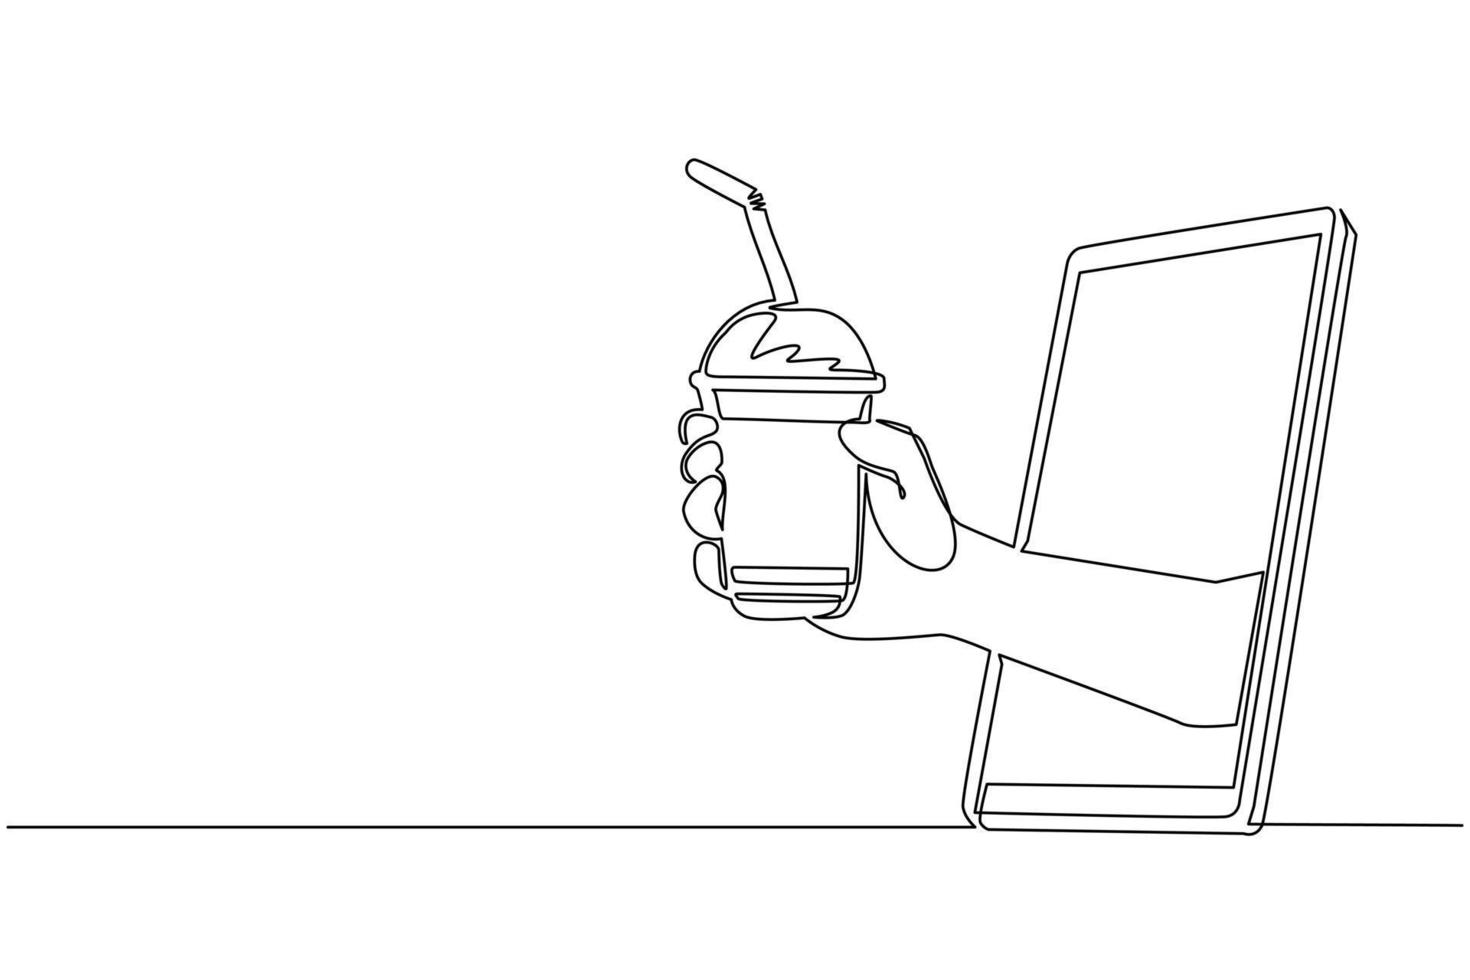 mano de dibujo de una sola línea sosteniendo una taza de té de burbujas con paja a través del teléfono móvil. concepto de comida en línea de entrega de pedidos de bebidas de café. aplicación para teléfonos inteligentes. vector de diseño de dibujo de línea continua